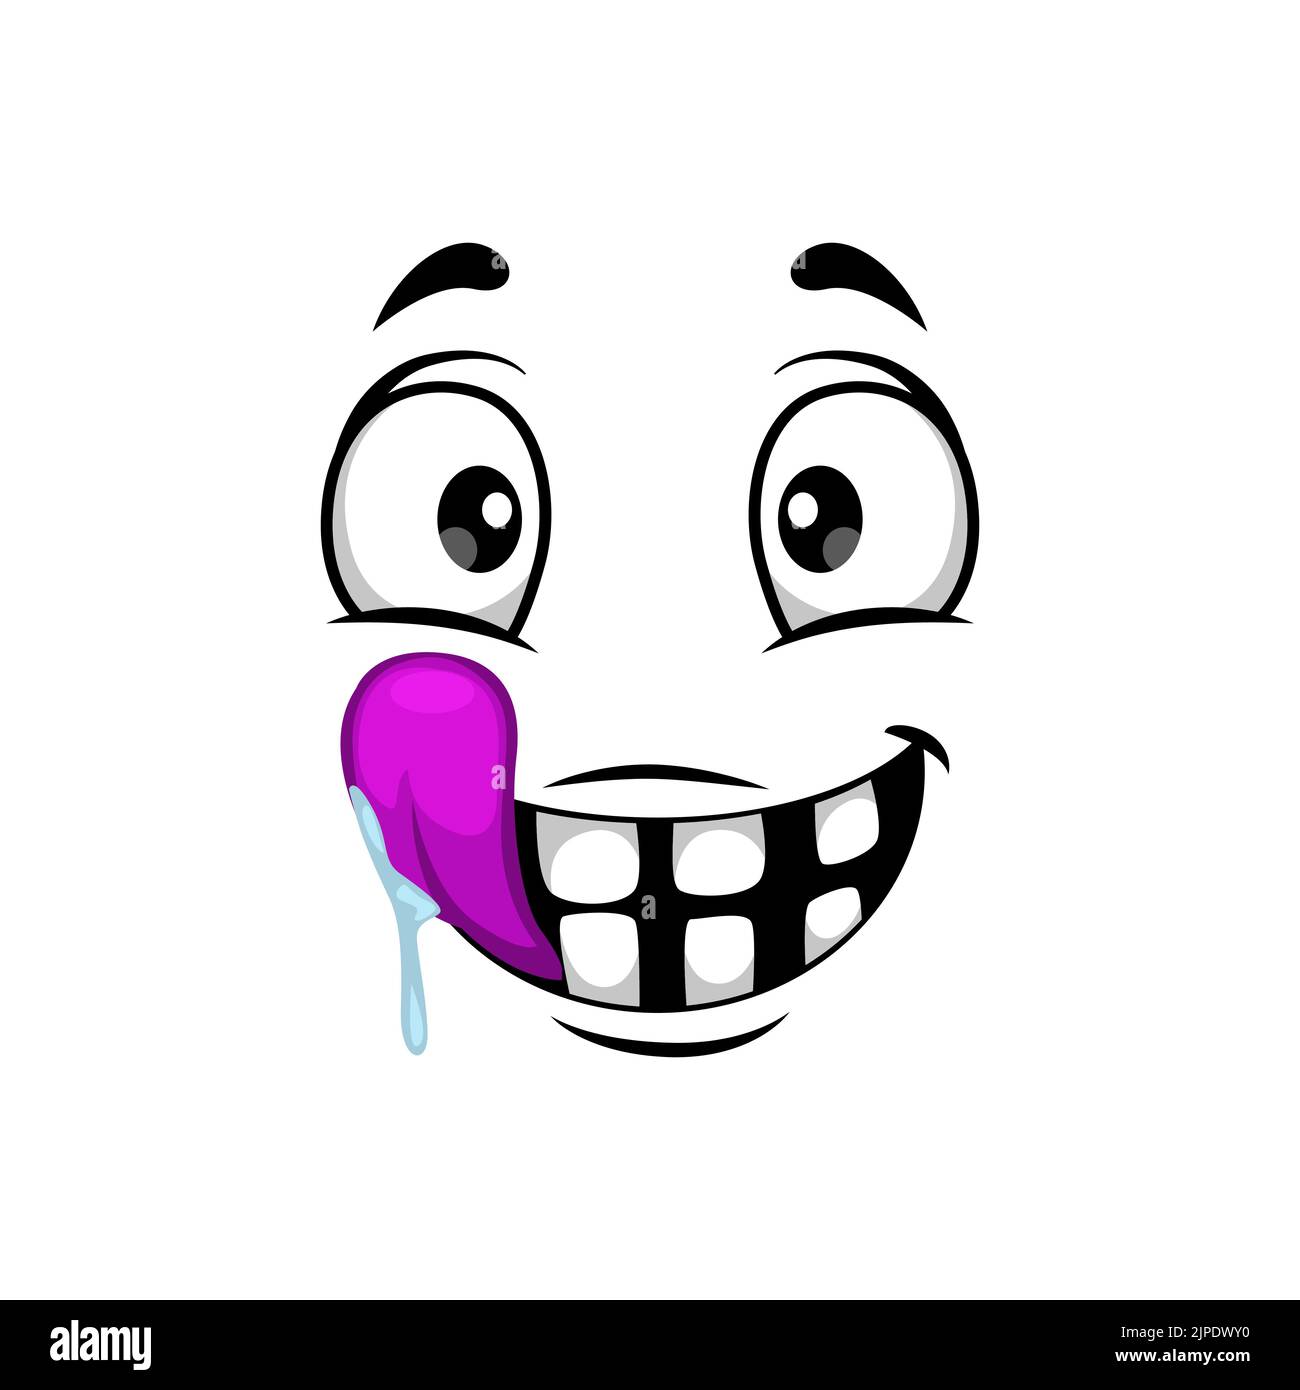 Icona vettoriale isolata faccia cartone animato, emoji facciali di creatura affamata divertente, sorriso emozionale con occhi rotondi e bocca con lingua rosa e saliva gocciolante Illustrazione Vettoriale